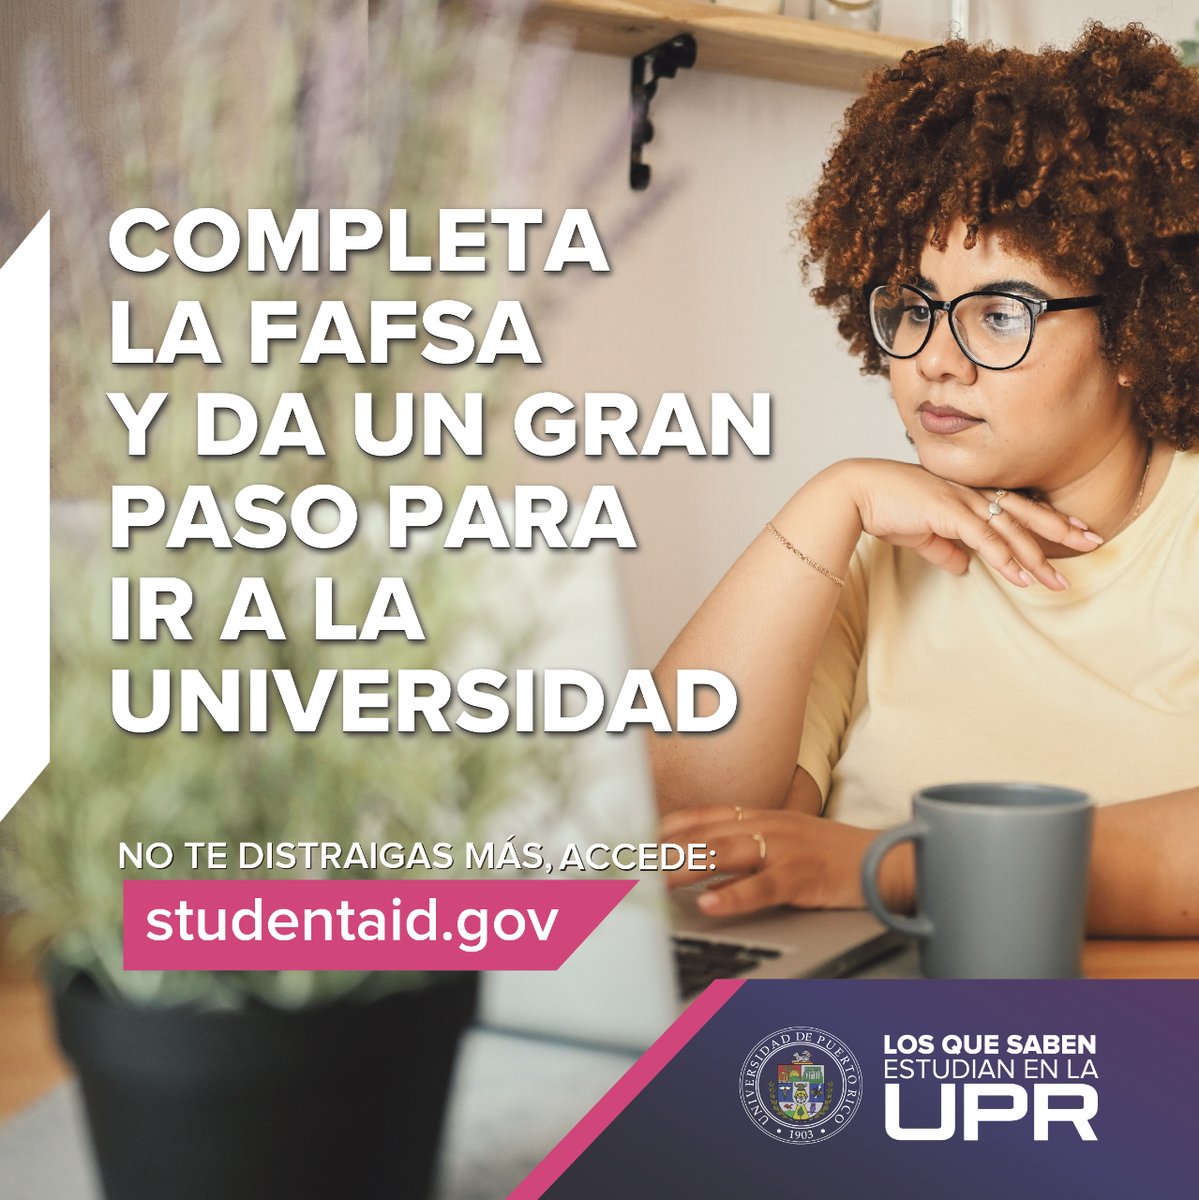 Queremos ayudarte a que completes una carrera universitaria en la #UPR, por eso te invitamos a llenar la nueva y mejorada #FAFSA. ¡Hazlo hoy!

Aquí un enlace de lo que debes saber: ed.gov/Better-FAFSA-es

#FAFSAFastBreak #FAFSAFastBreak #UPRFAFSA